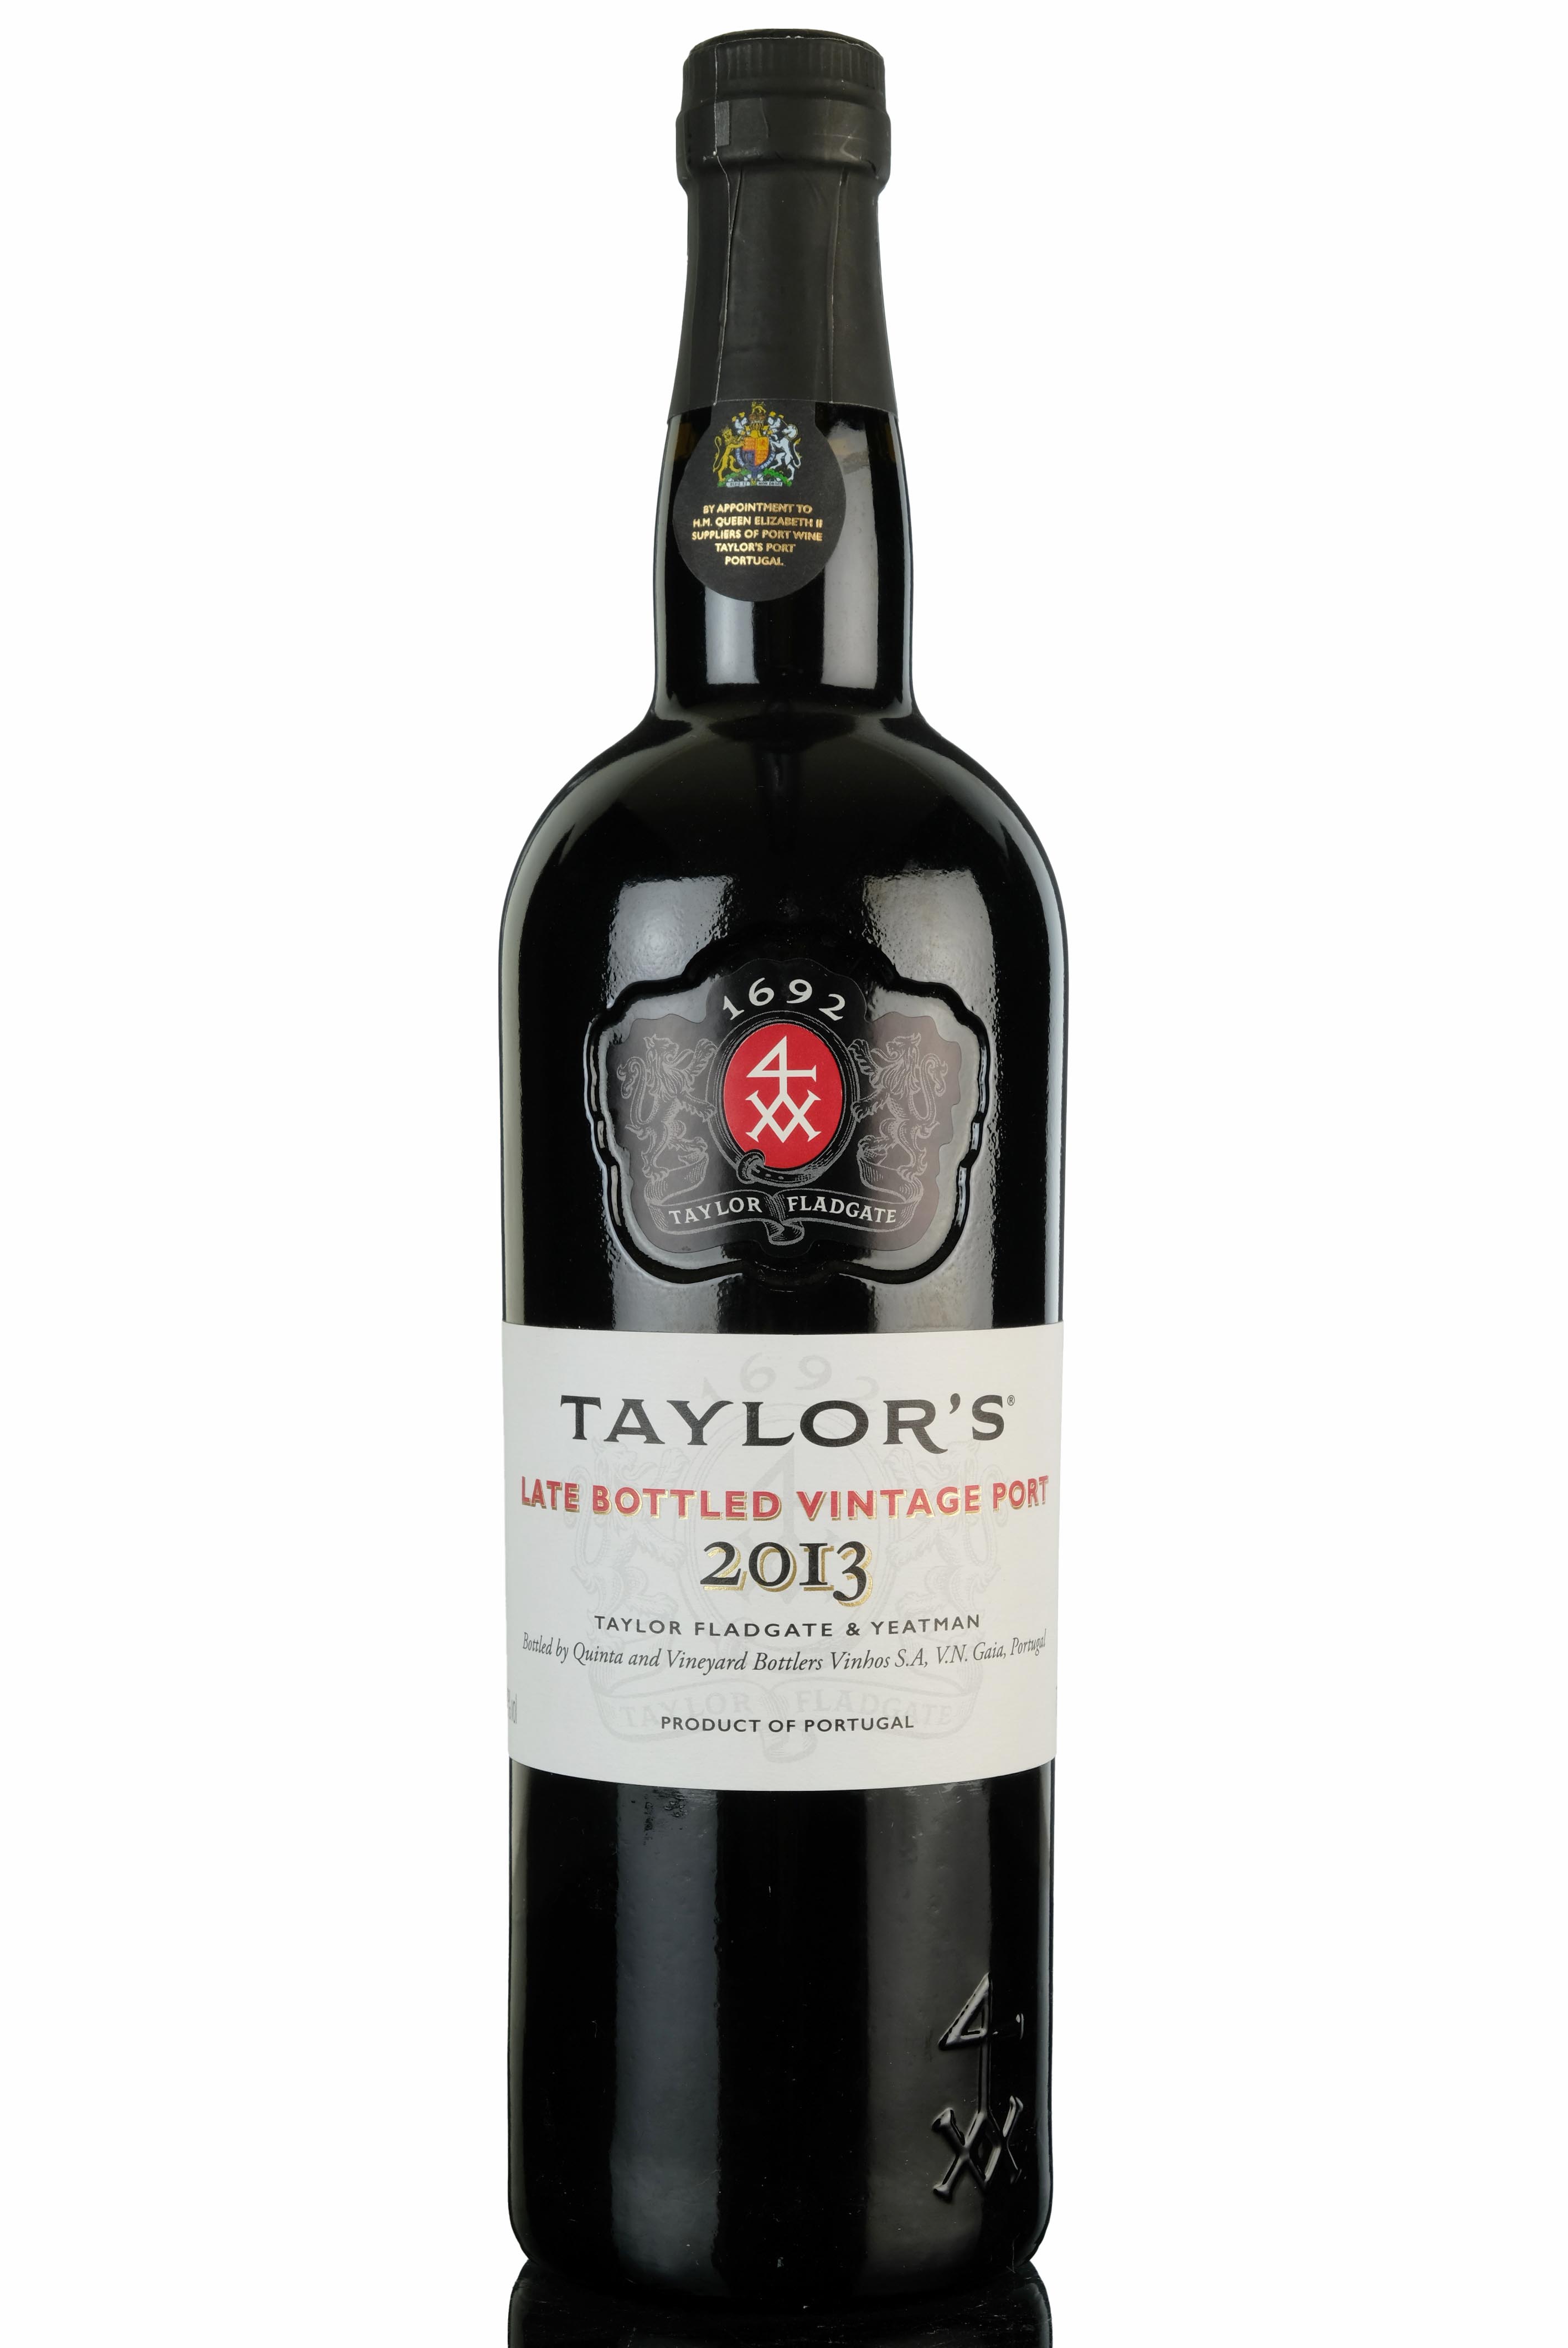 Taylors 2013 Late Bottled Vintage Port